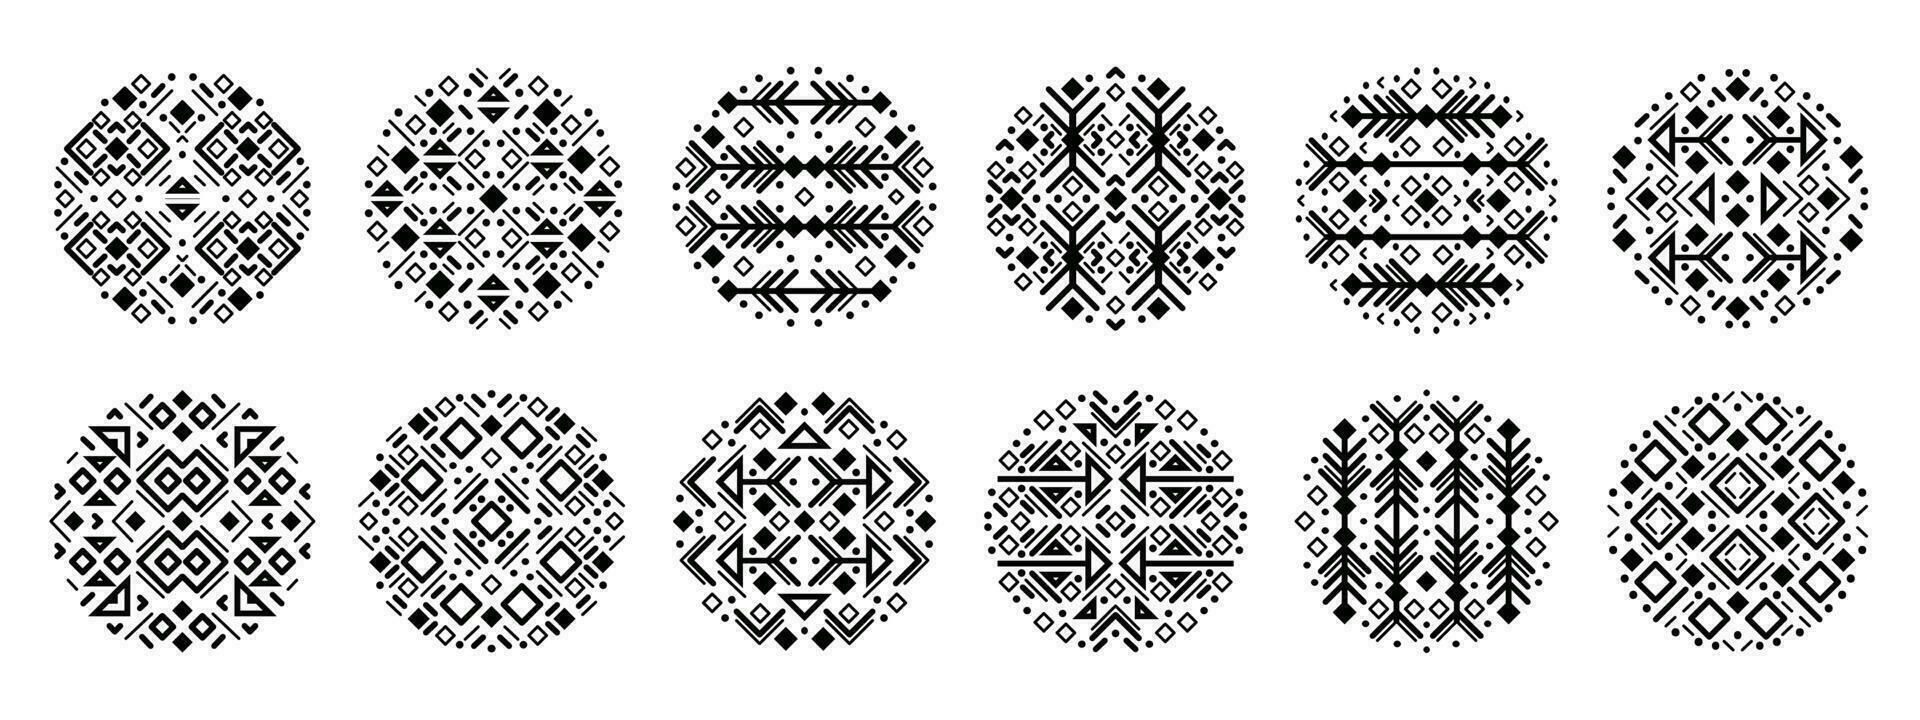 vektor uppsättning av stam- omslag former, dekorativ geometrisk aztec cirklar